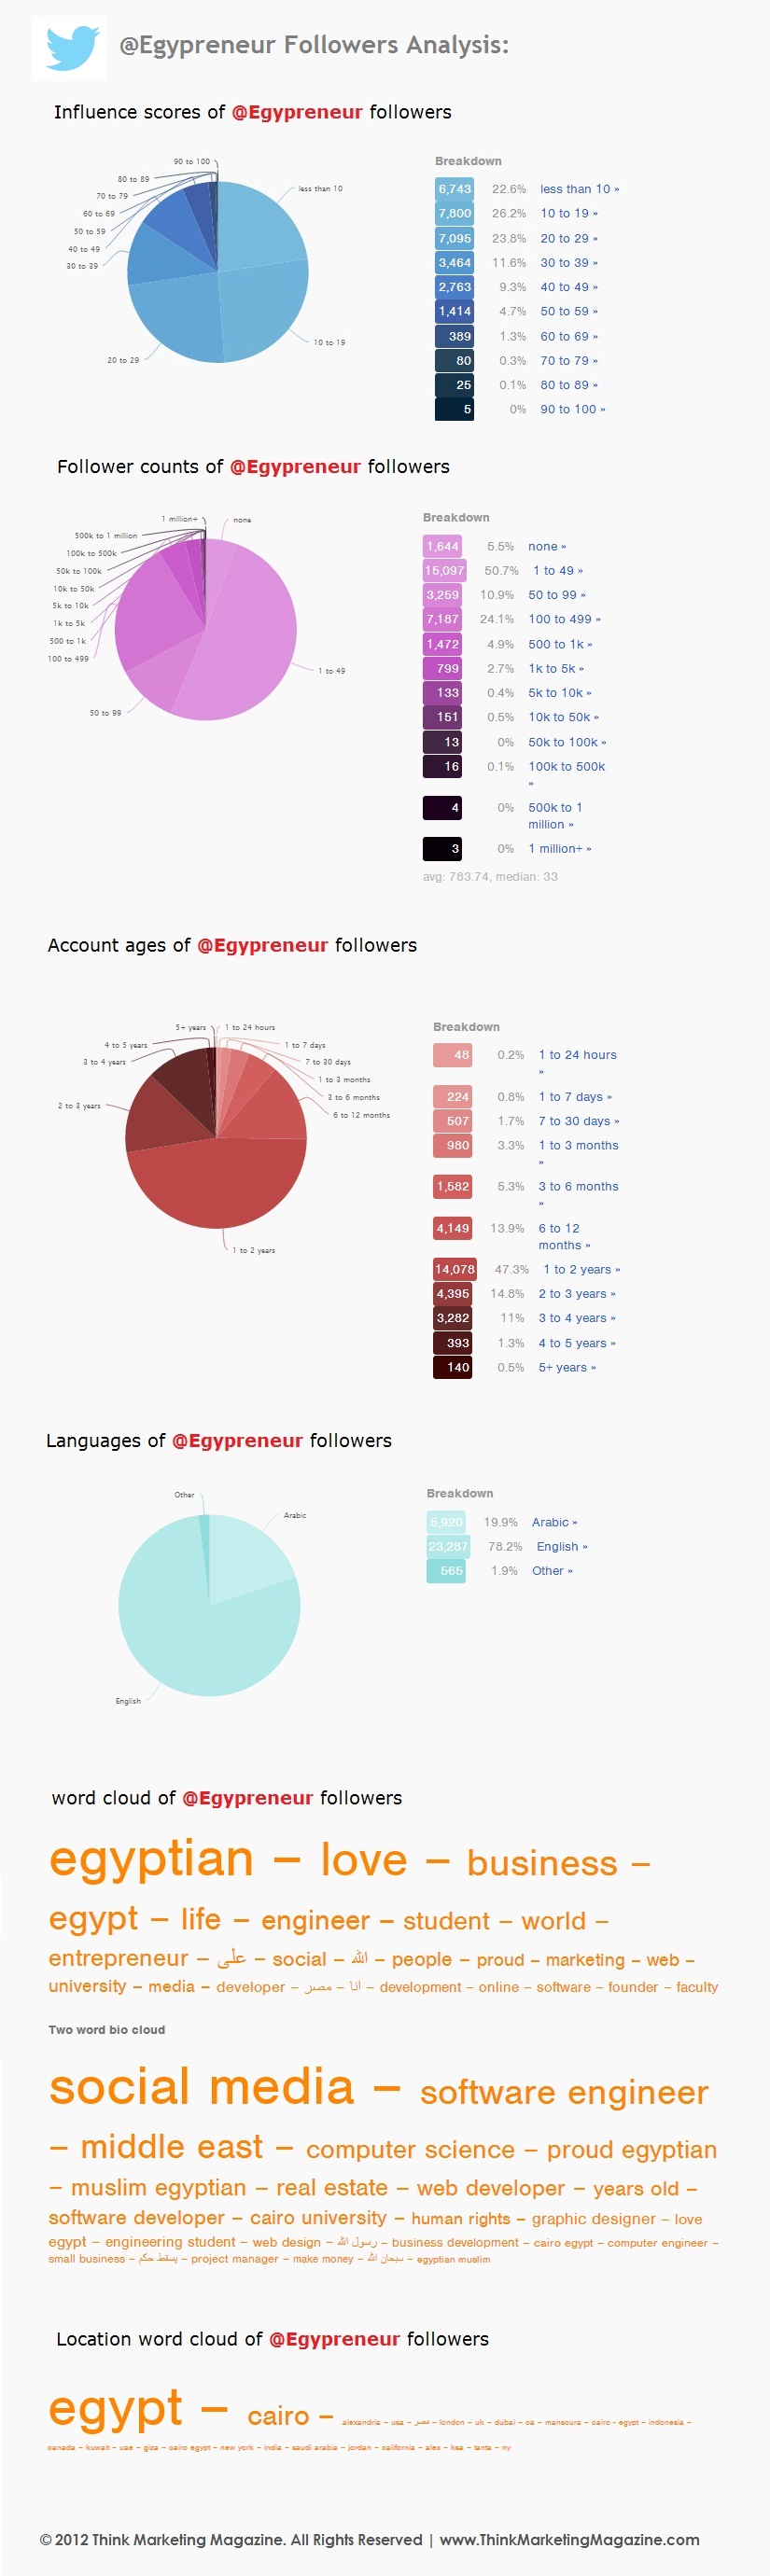 @Egypreneur Followers Analyzed